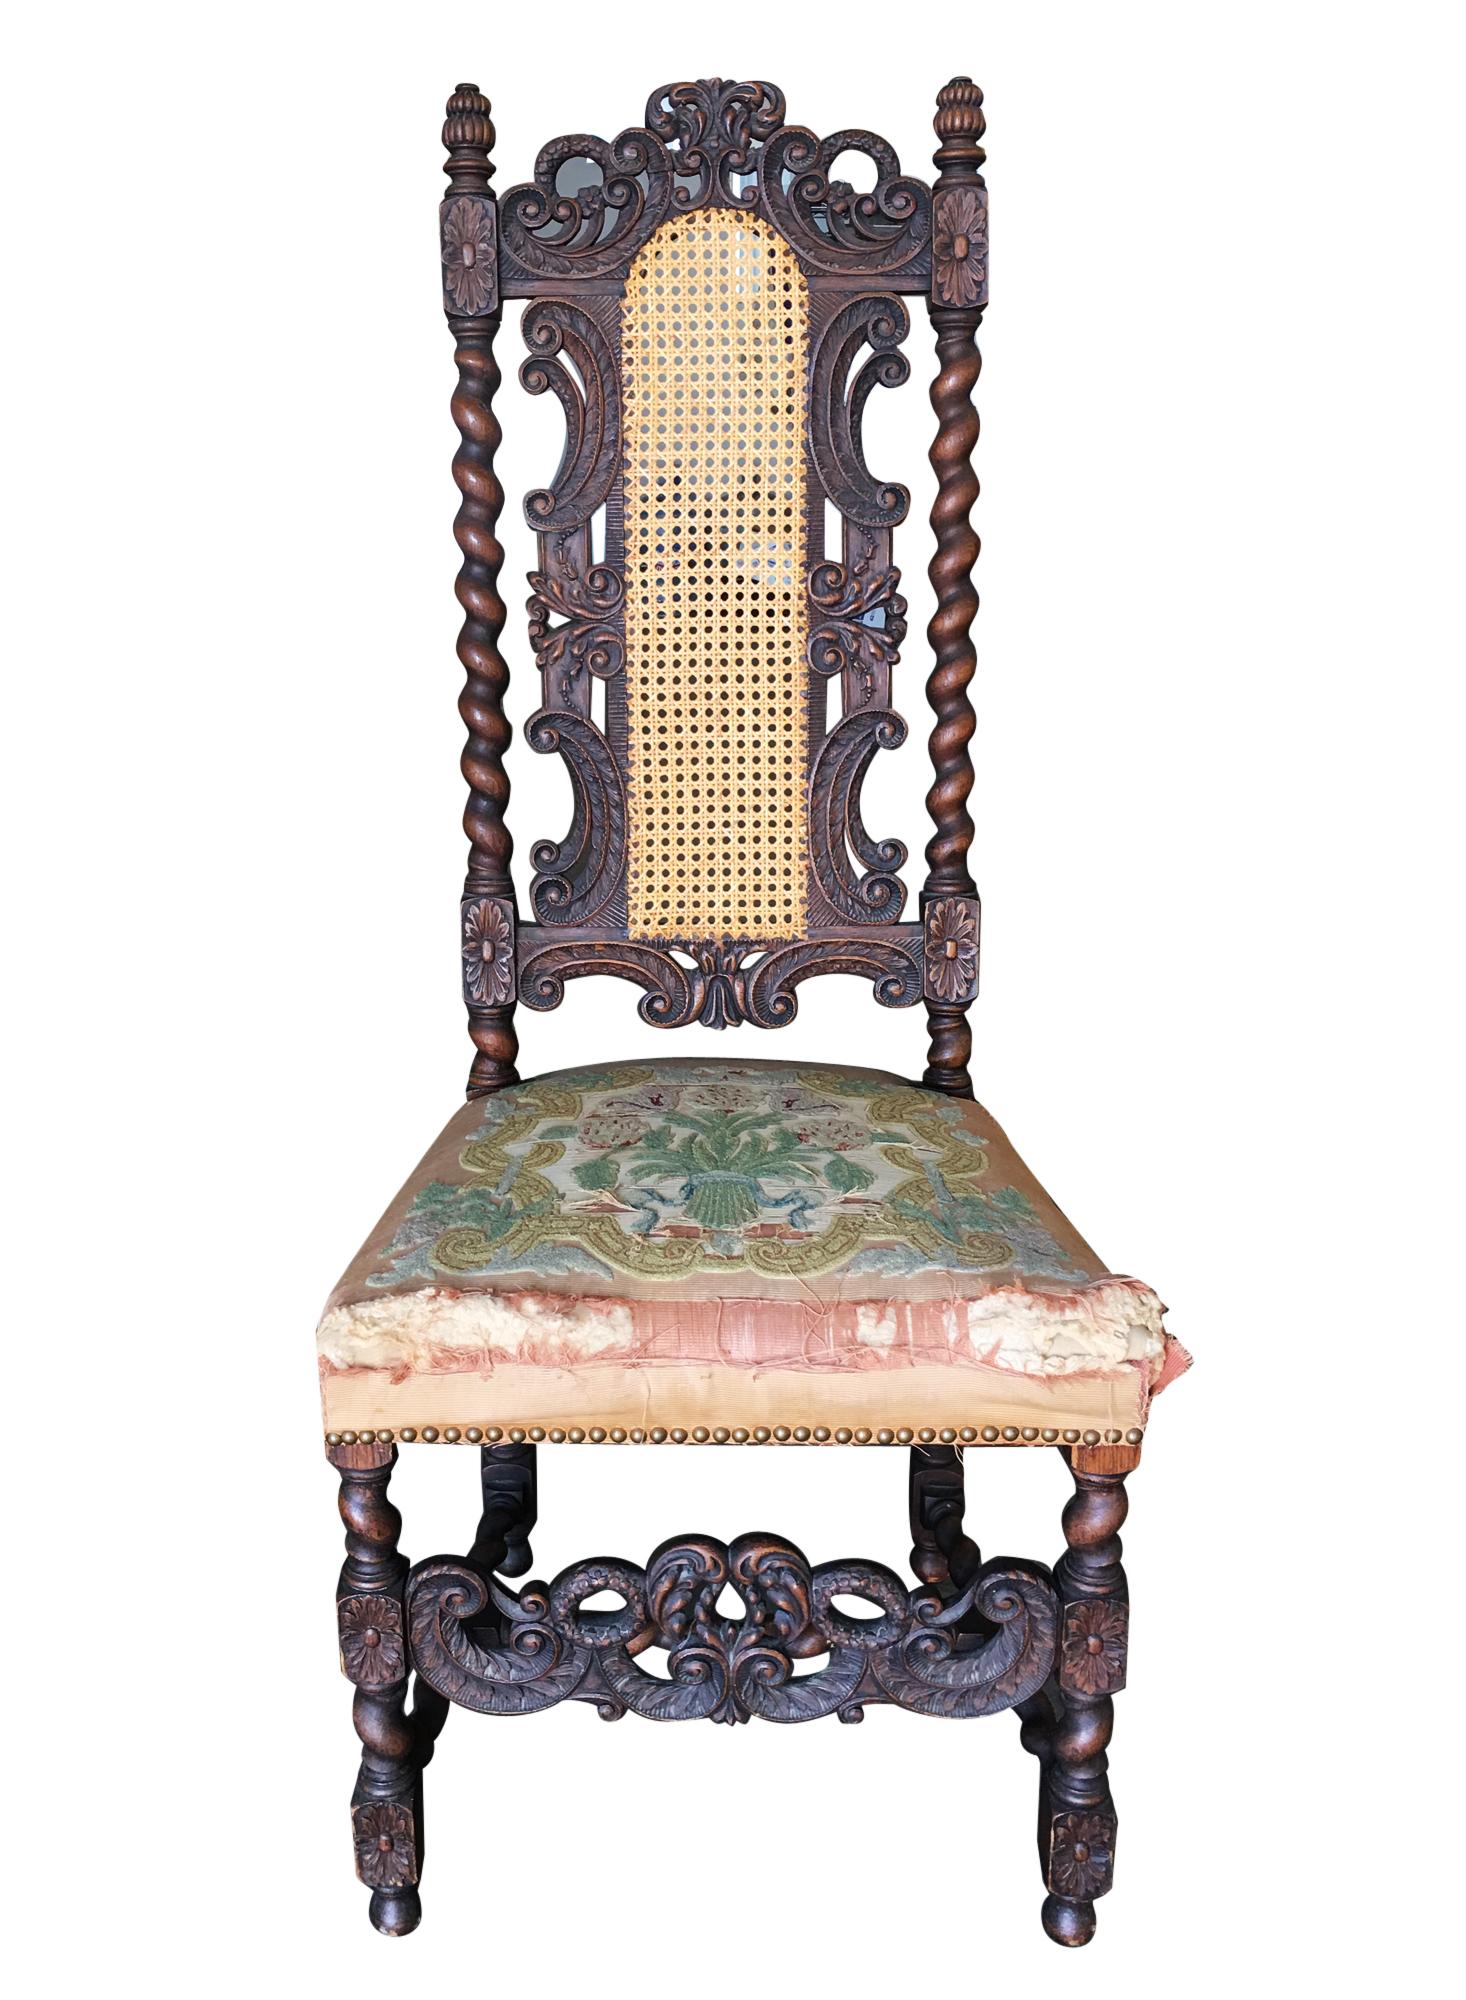 Chaise trône d'appoint victorienne en chêne sculpté à la main, de style néo-gothique, avec dossier en osier tressé et siège en pointe d'aiguille,

vers 1860.